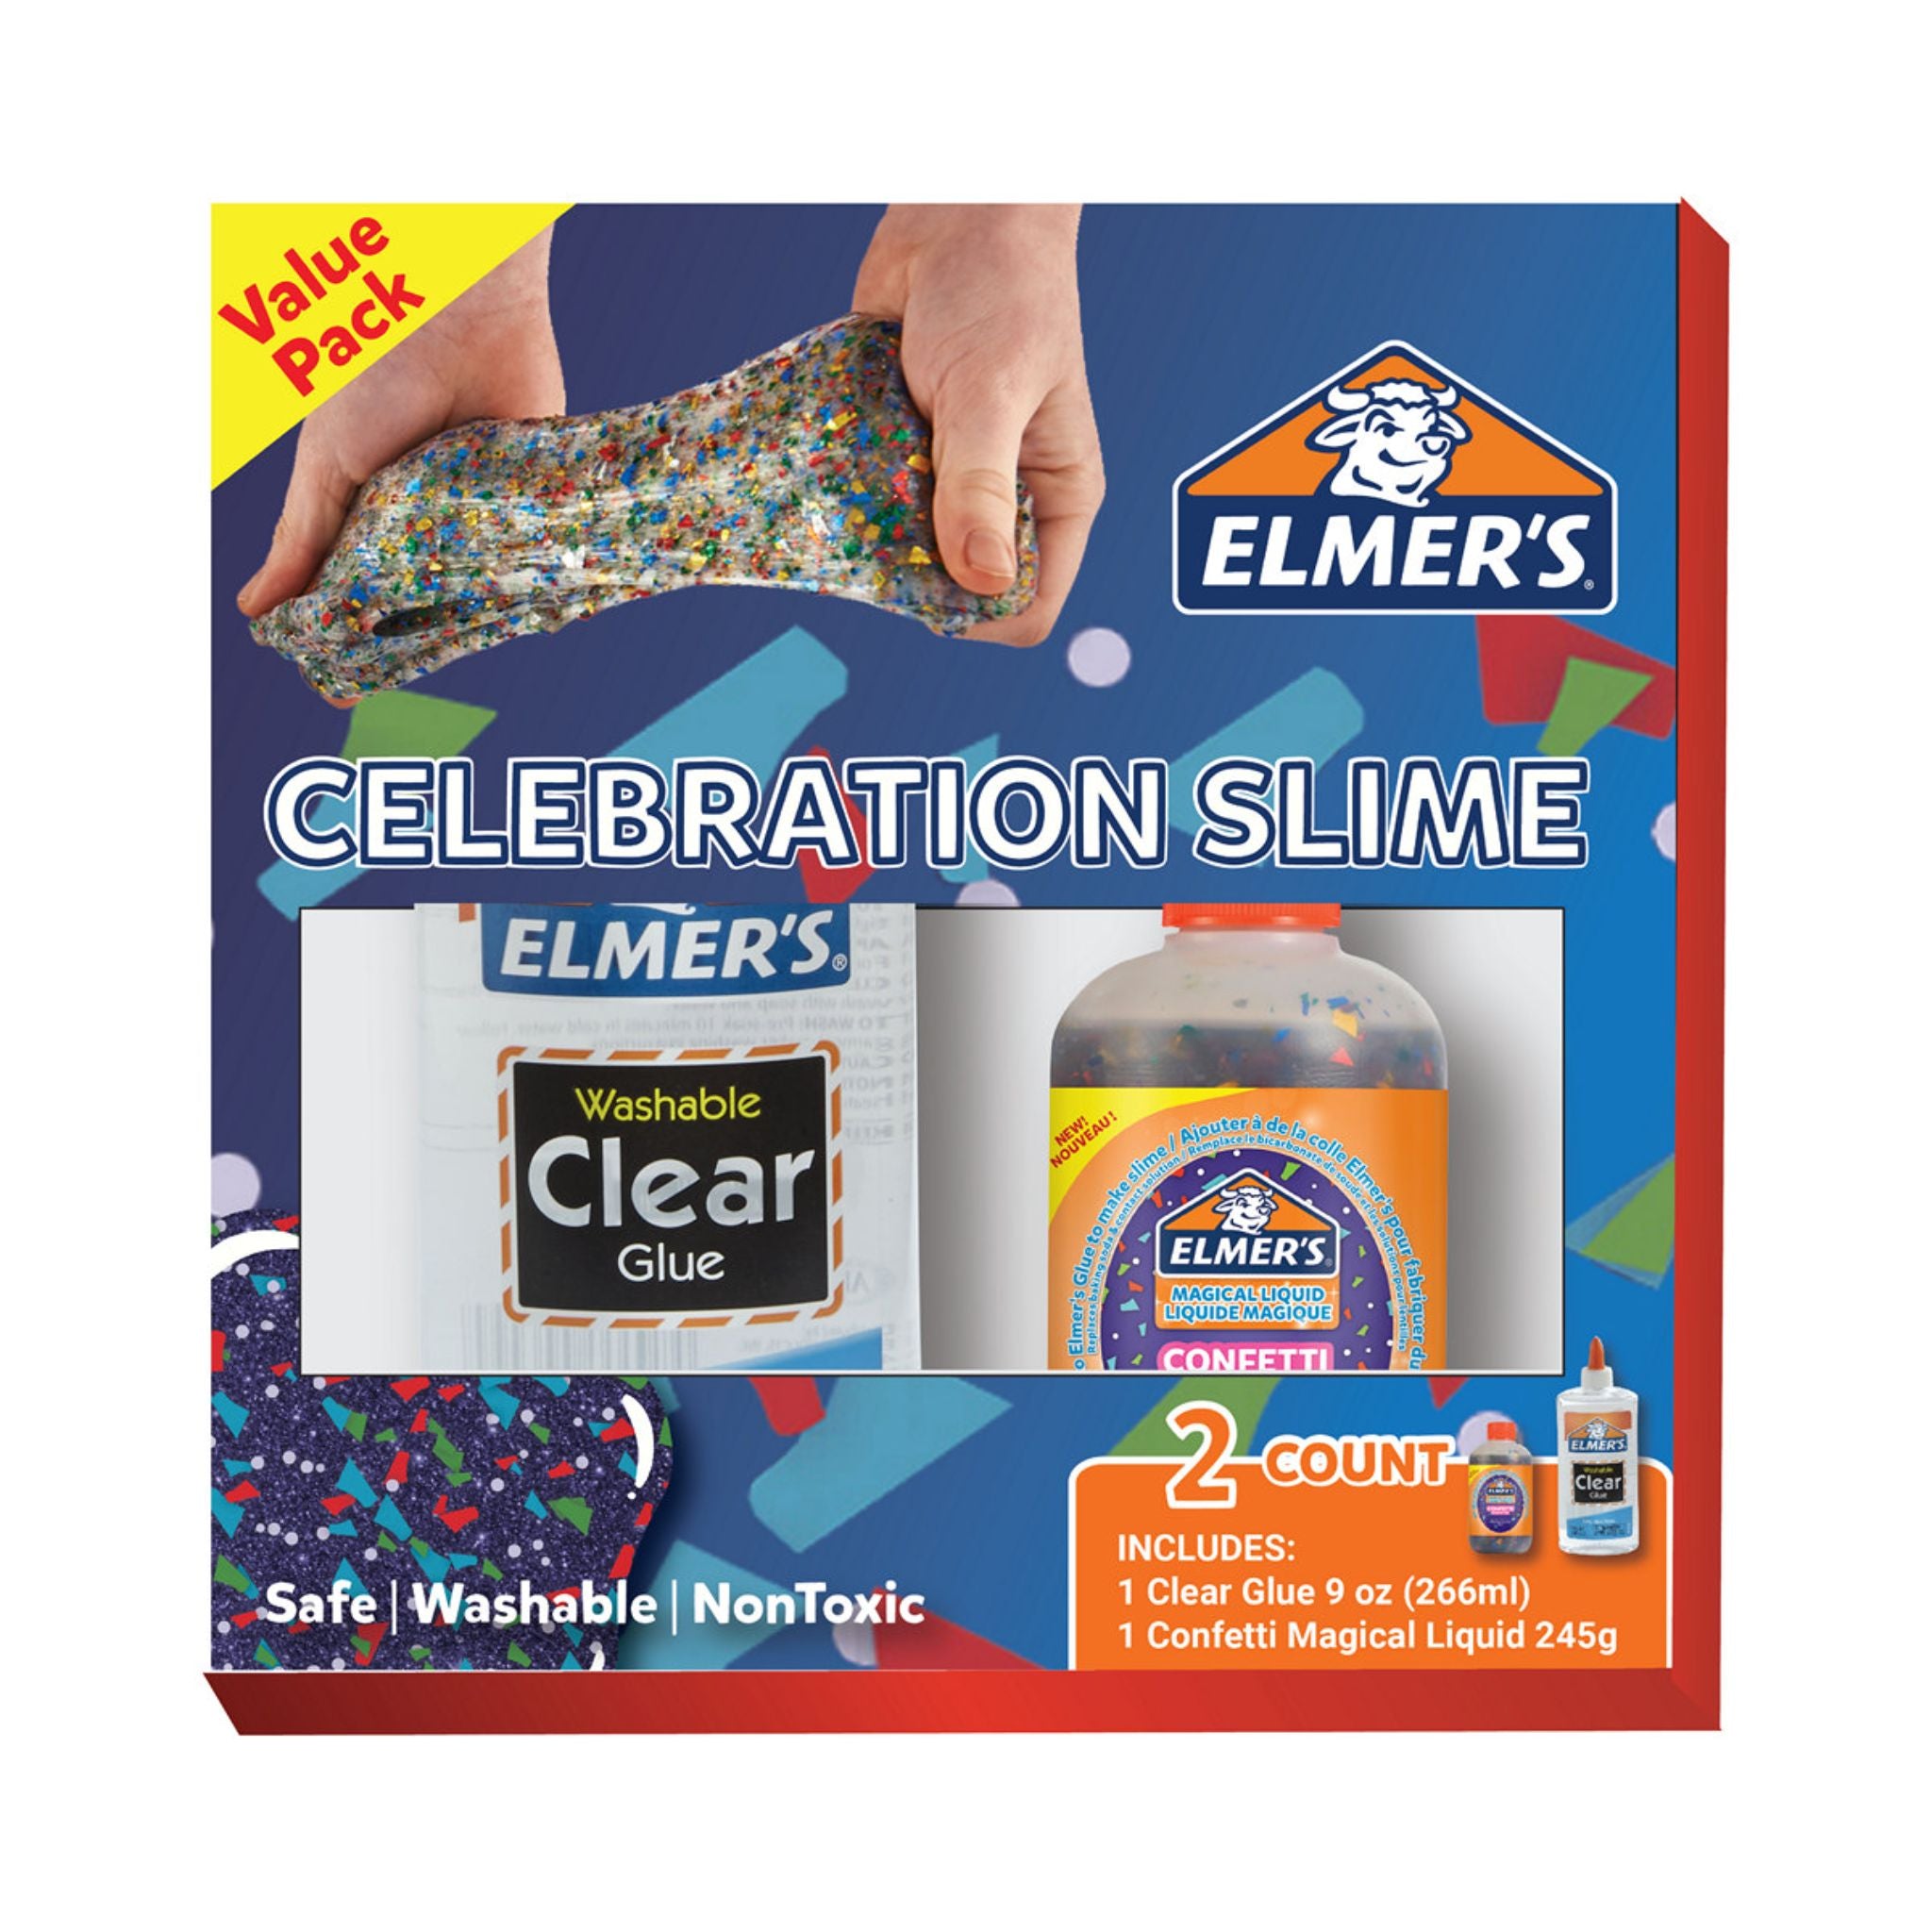 Elmer's Celebration Slime Kit